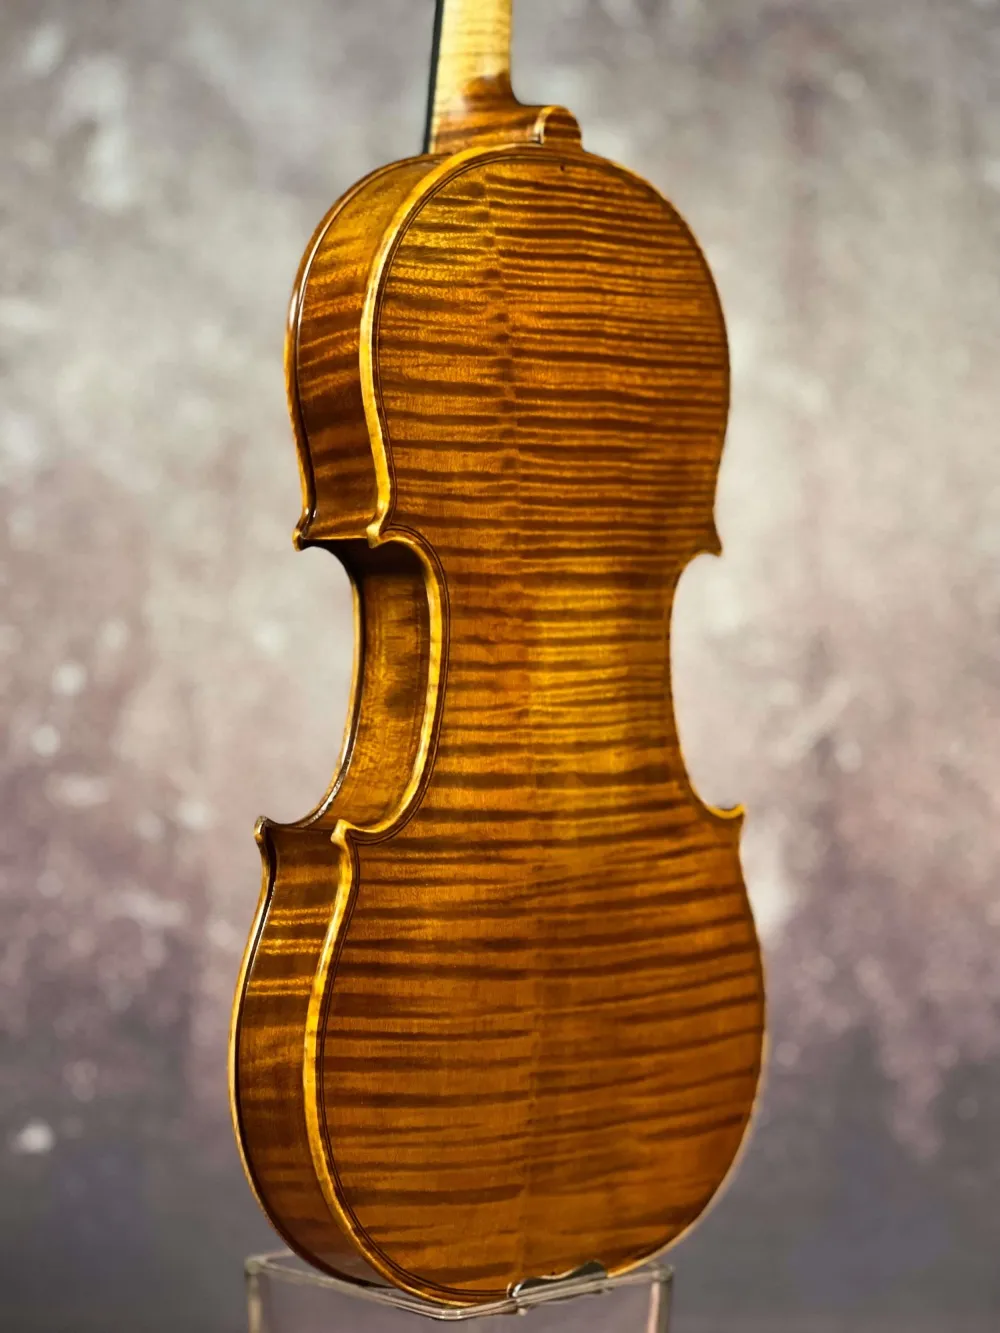 Boden-Zarge-Detailansicht einer Simon Joseph Meister Geige (Violine) Handarbeit 2018